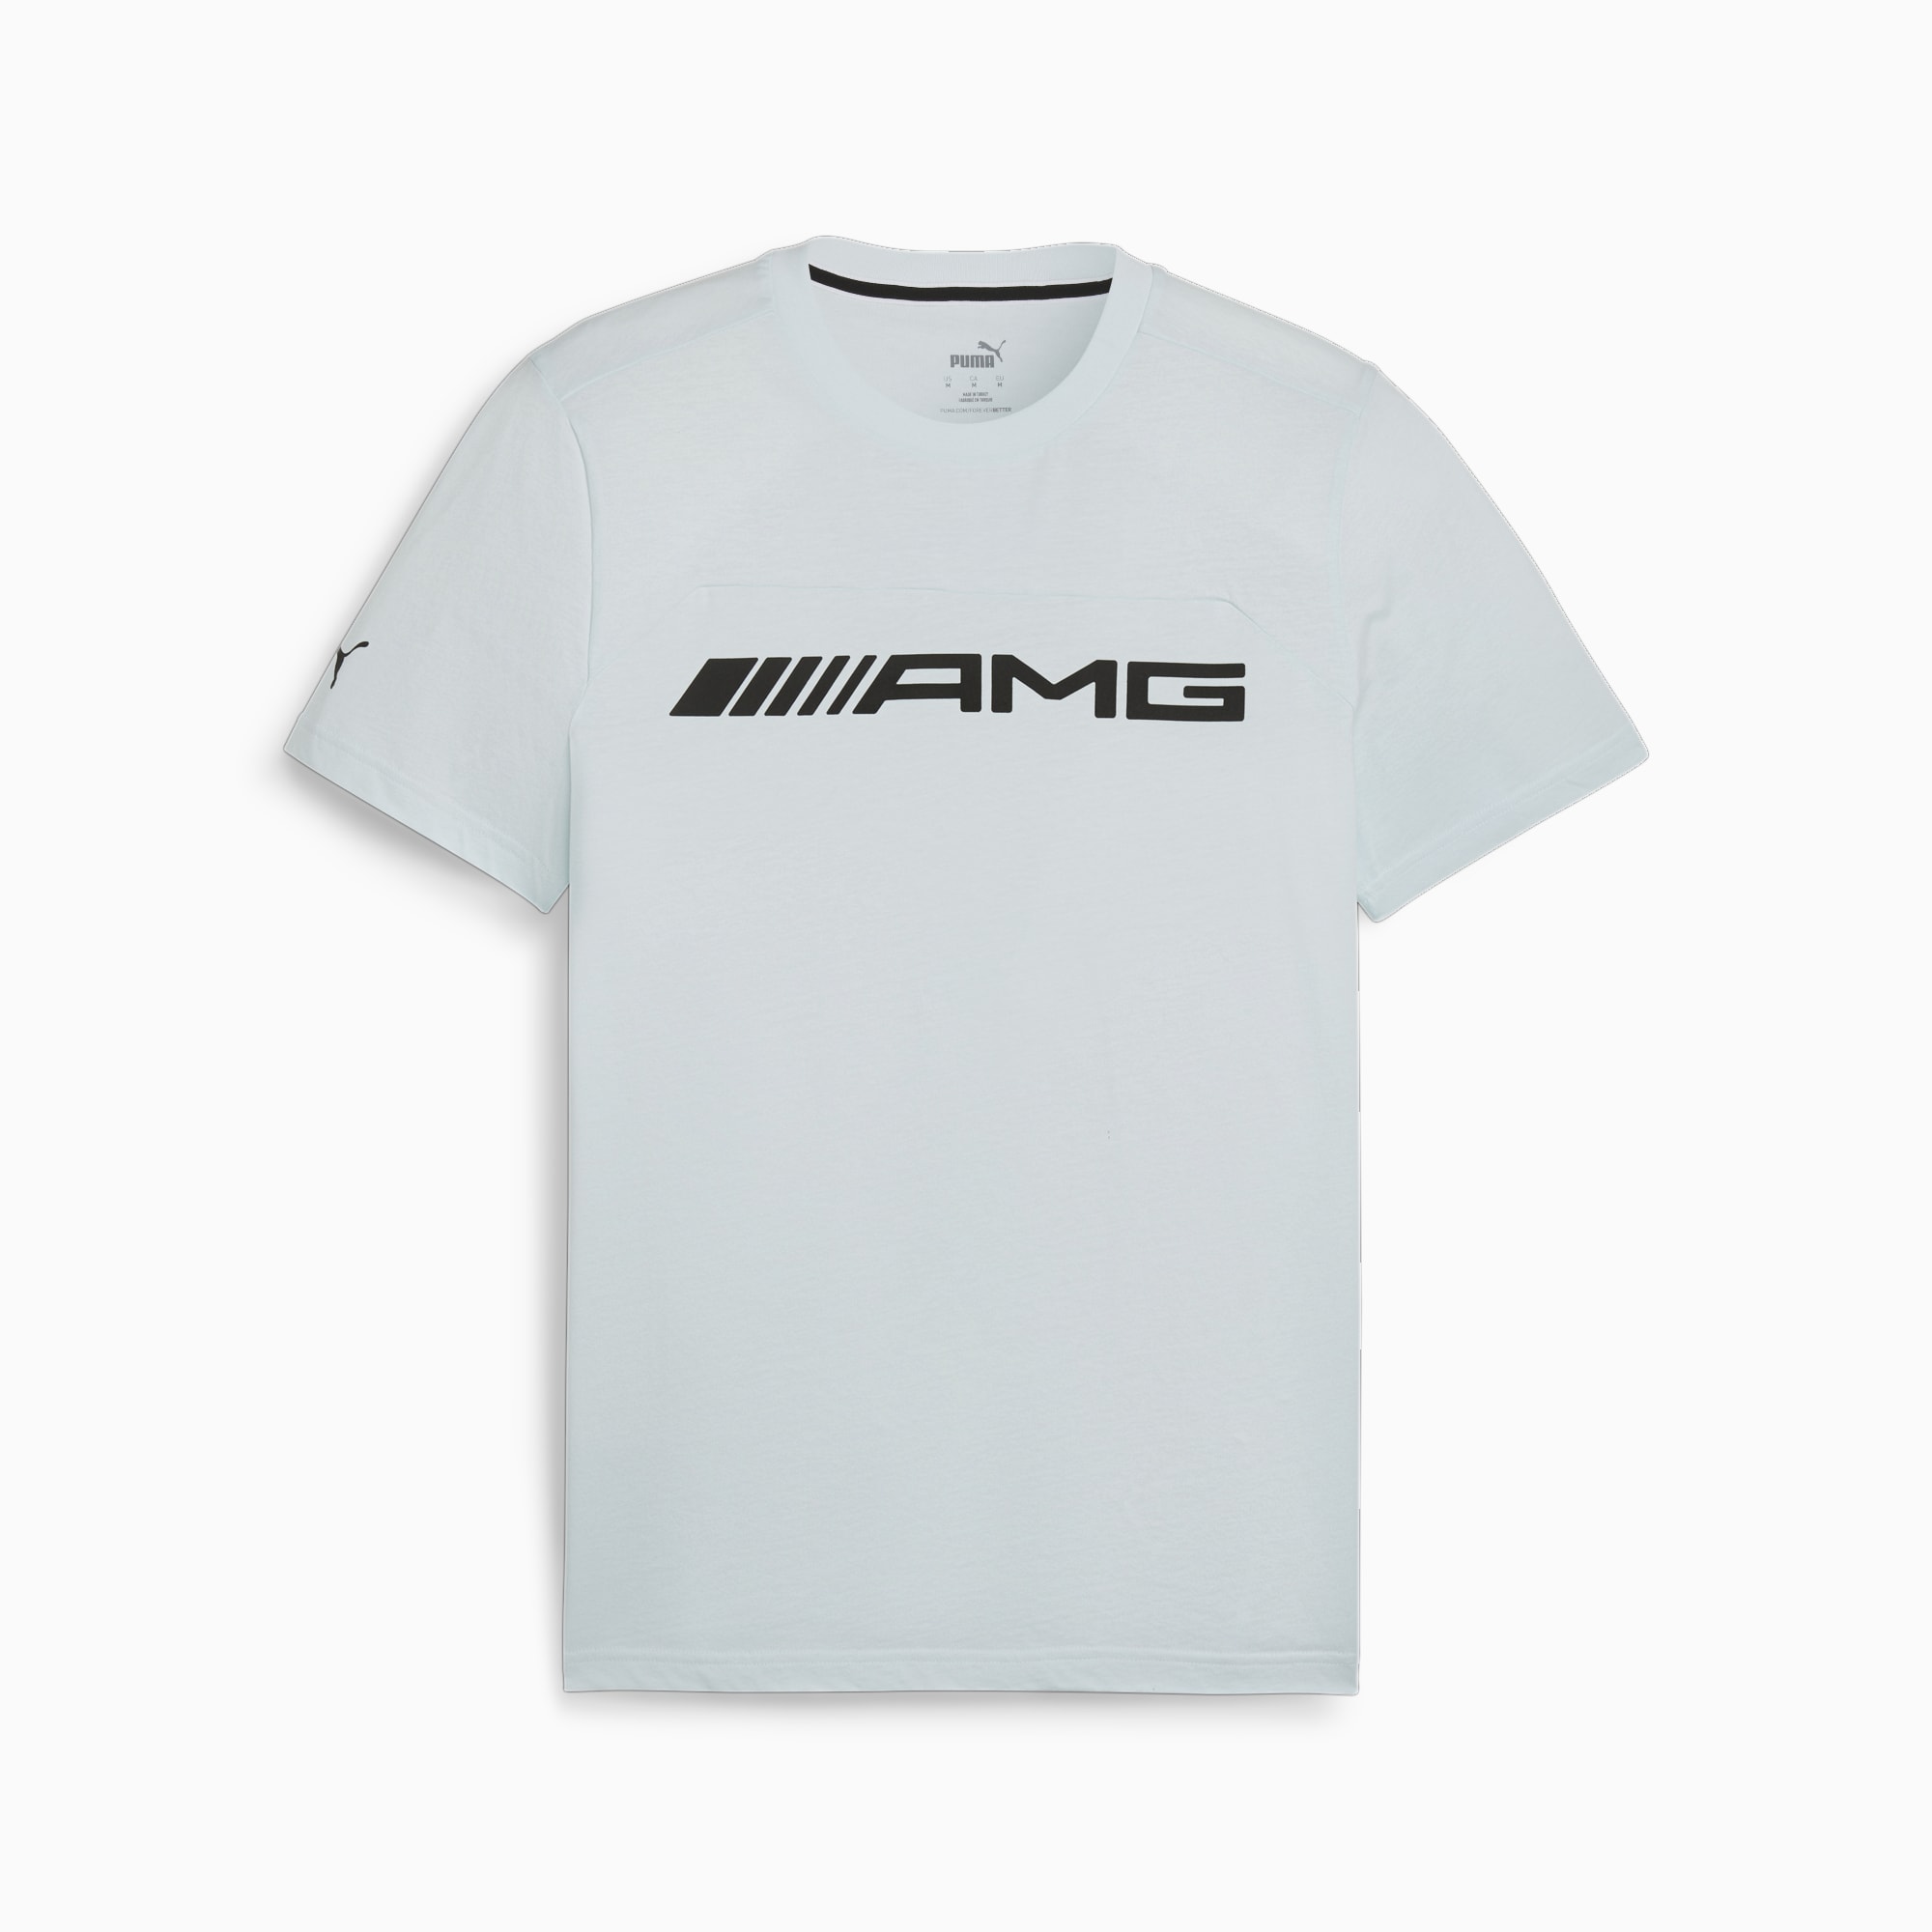 PUMA Koszulka AMG Motorsports, Dewdrop